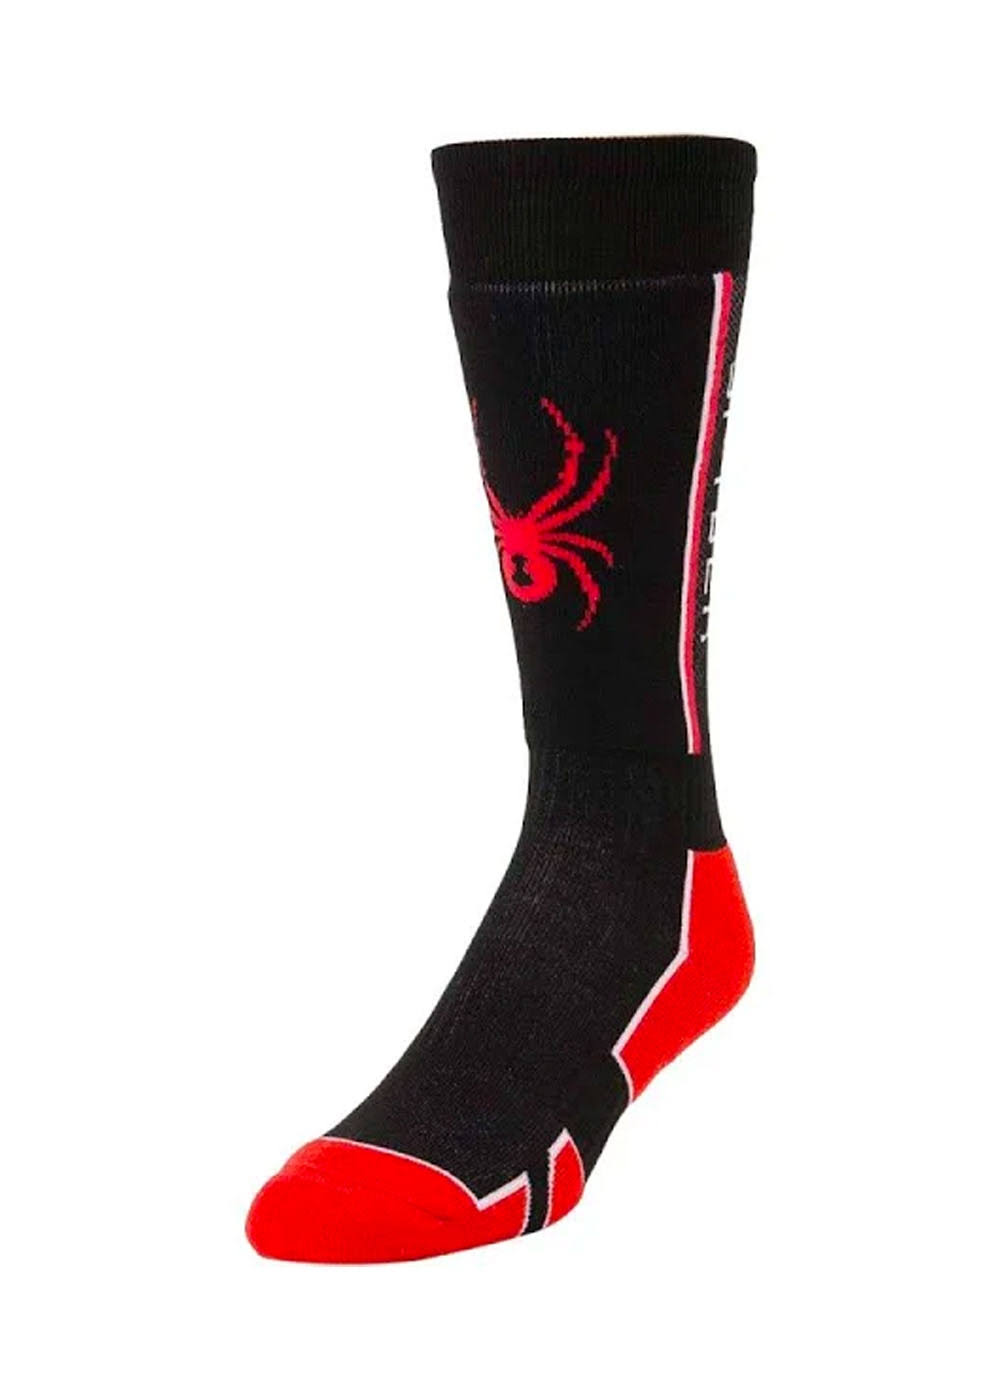 Spyder Men's Sweep Ski Socks, XL / Black